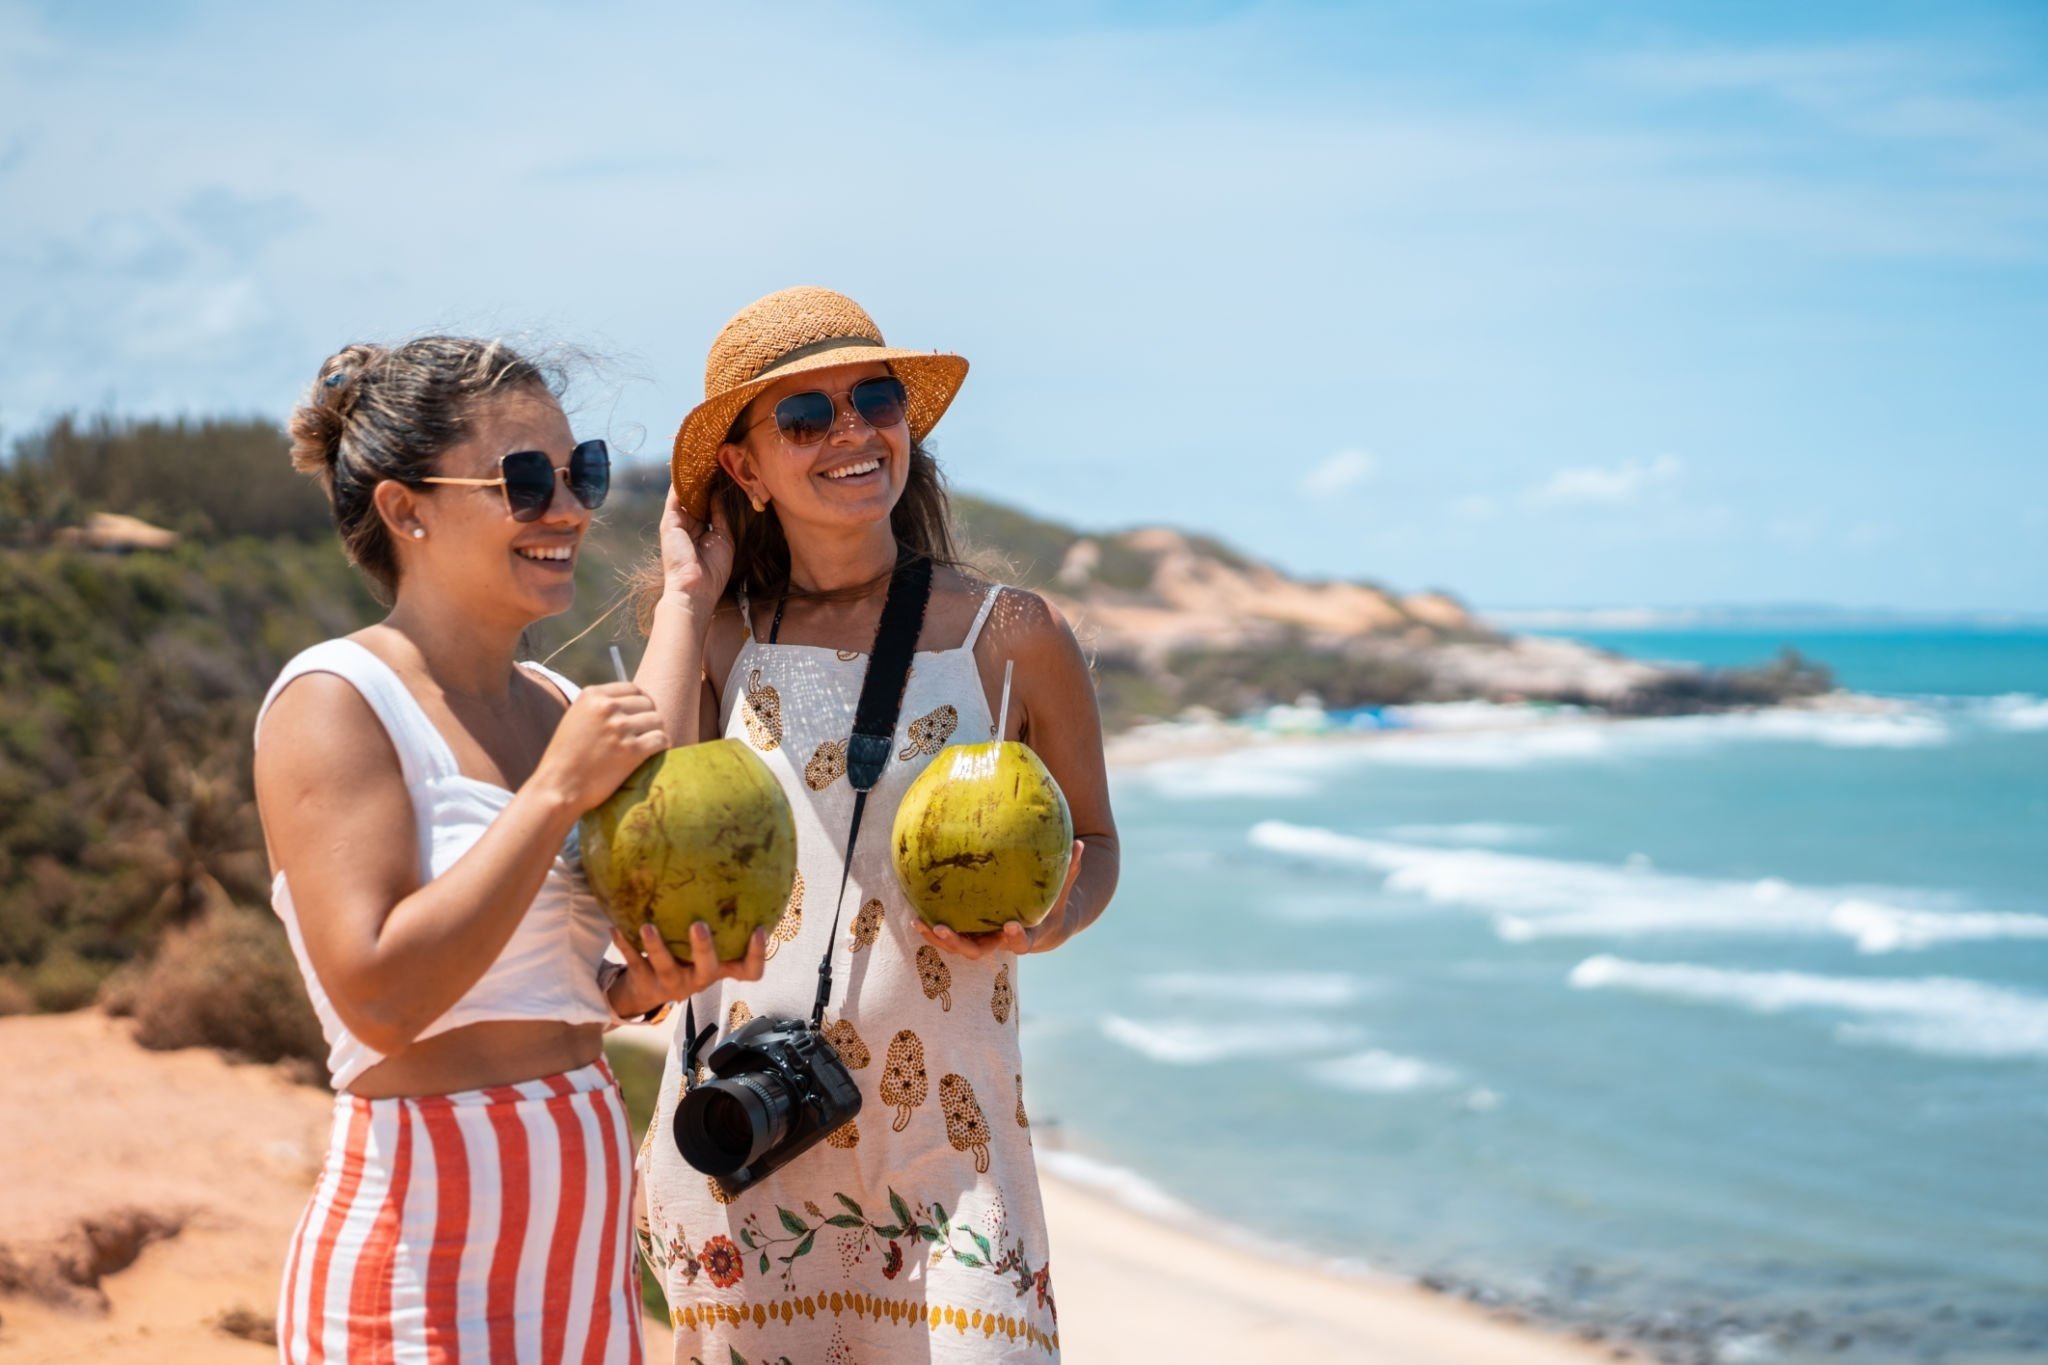 Tendências no turismo em 2023: pacotes de viagem são destaque | Turistas em praia | Conexão123